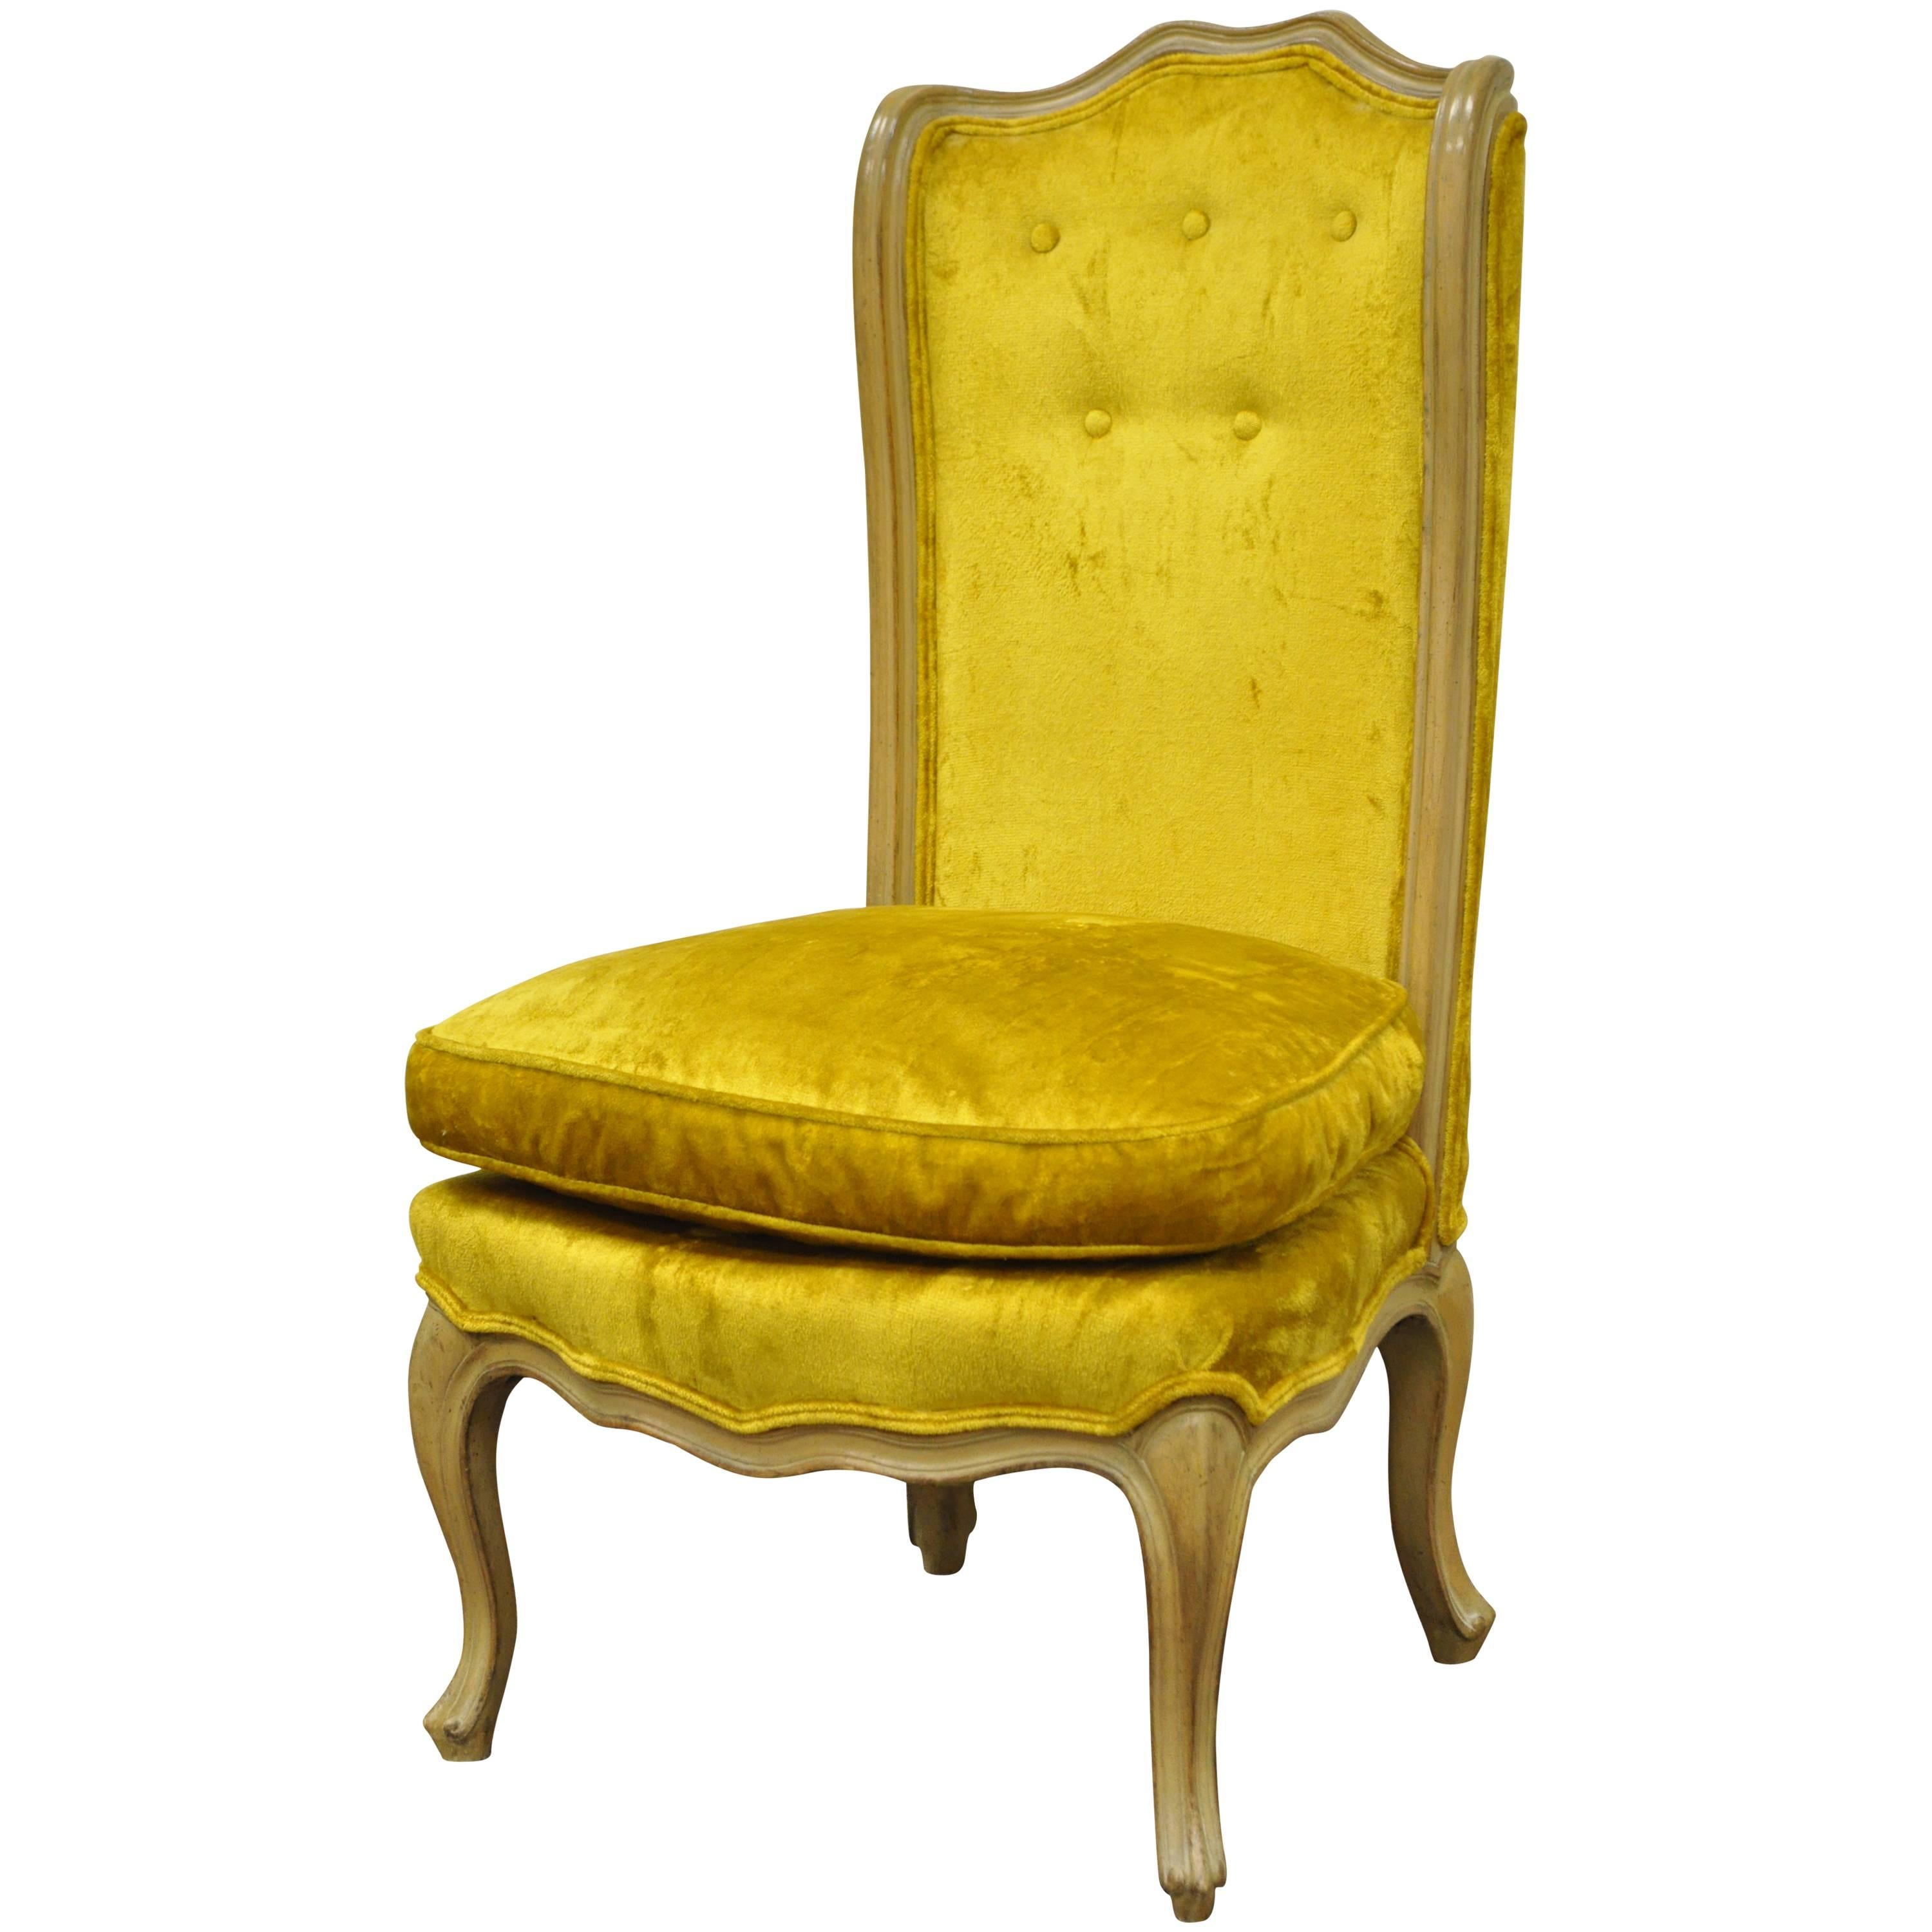 Kleiner Sessel mit geschwungener Rückenlehne im Louis XV Provincial-Stil, Gelb, Louis XV.-Stil